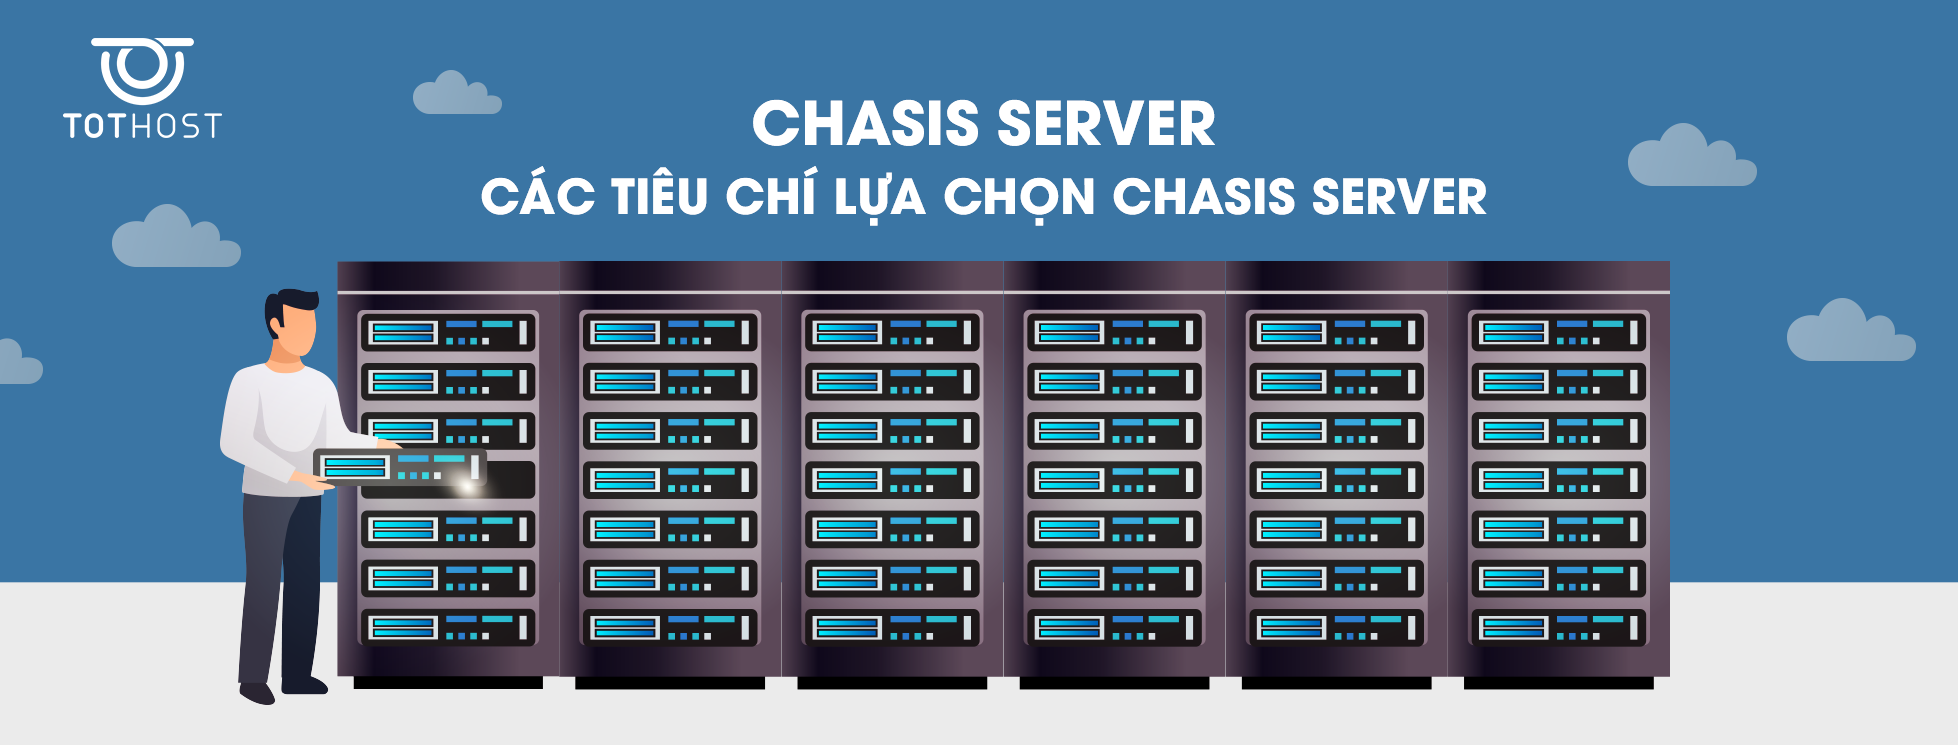 Chasis Server là gì?